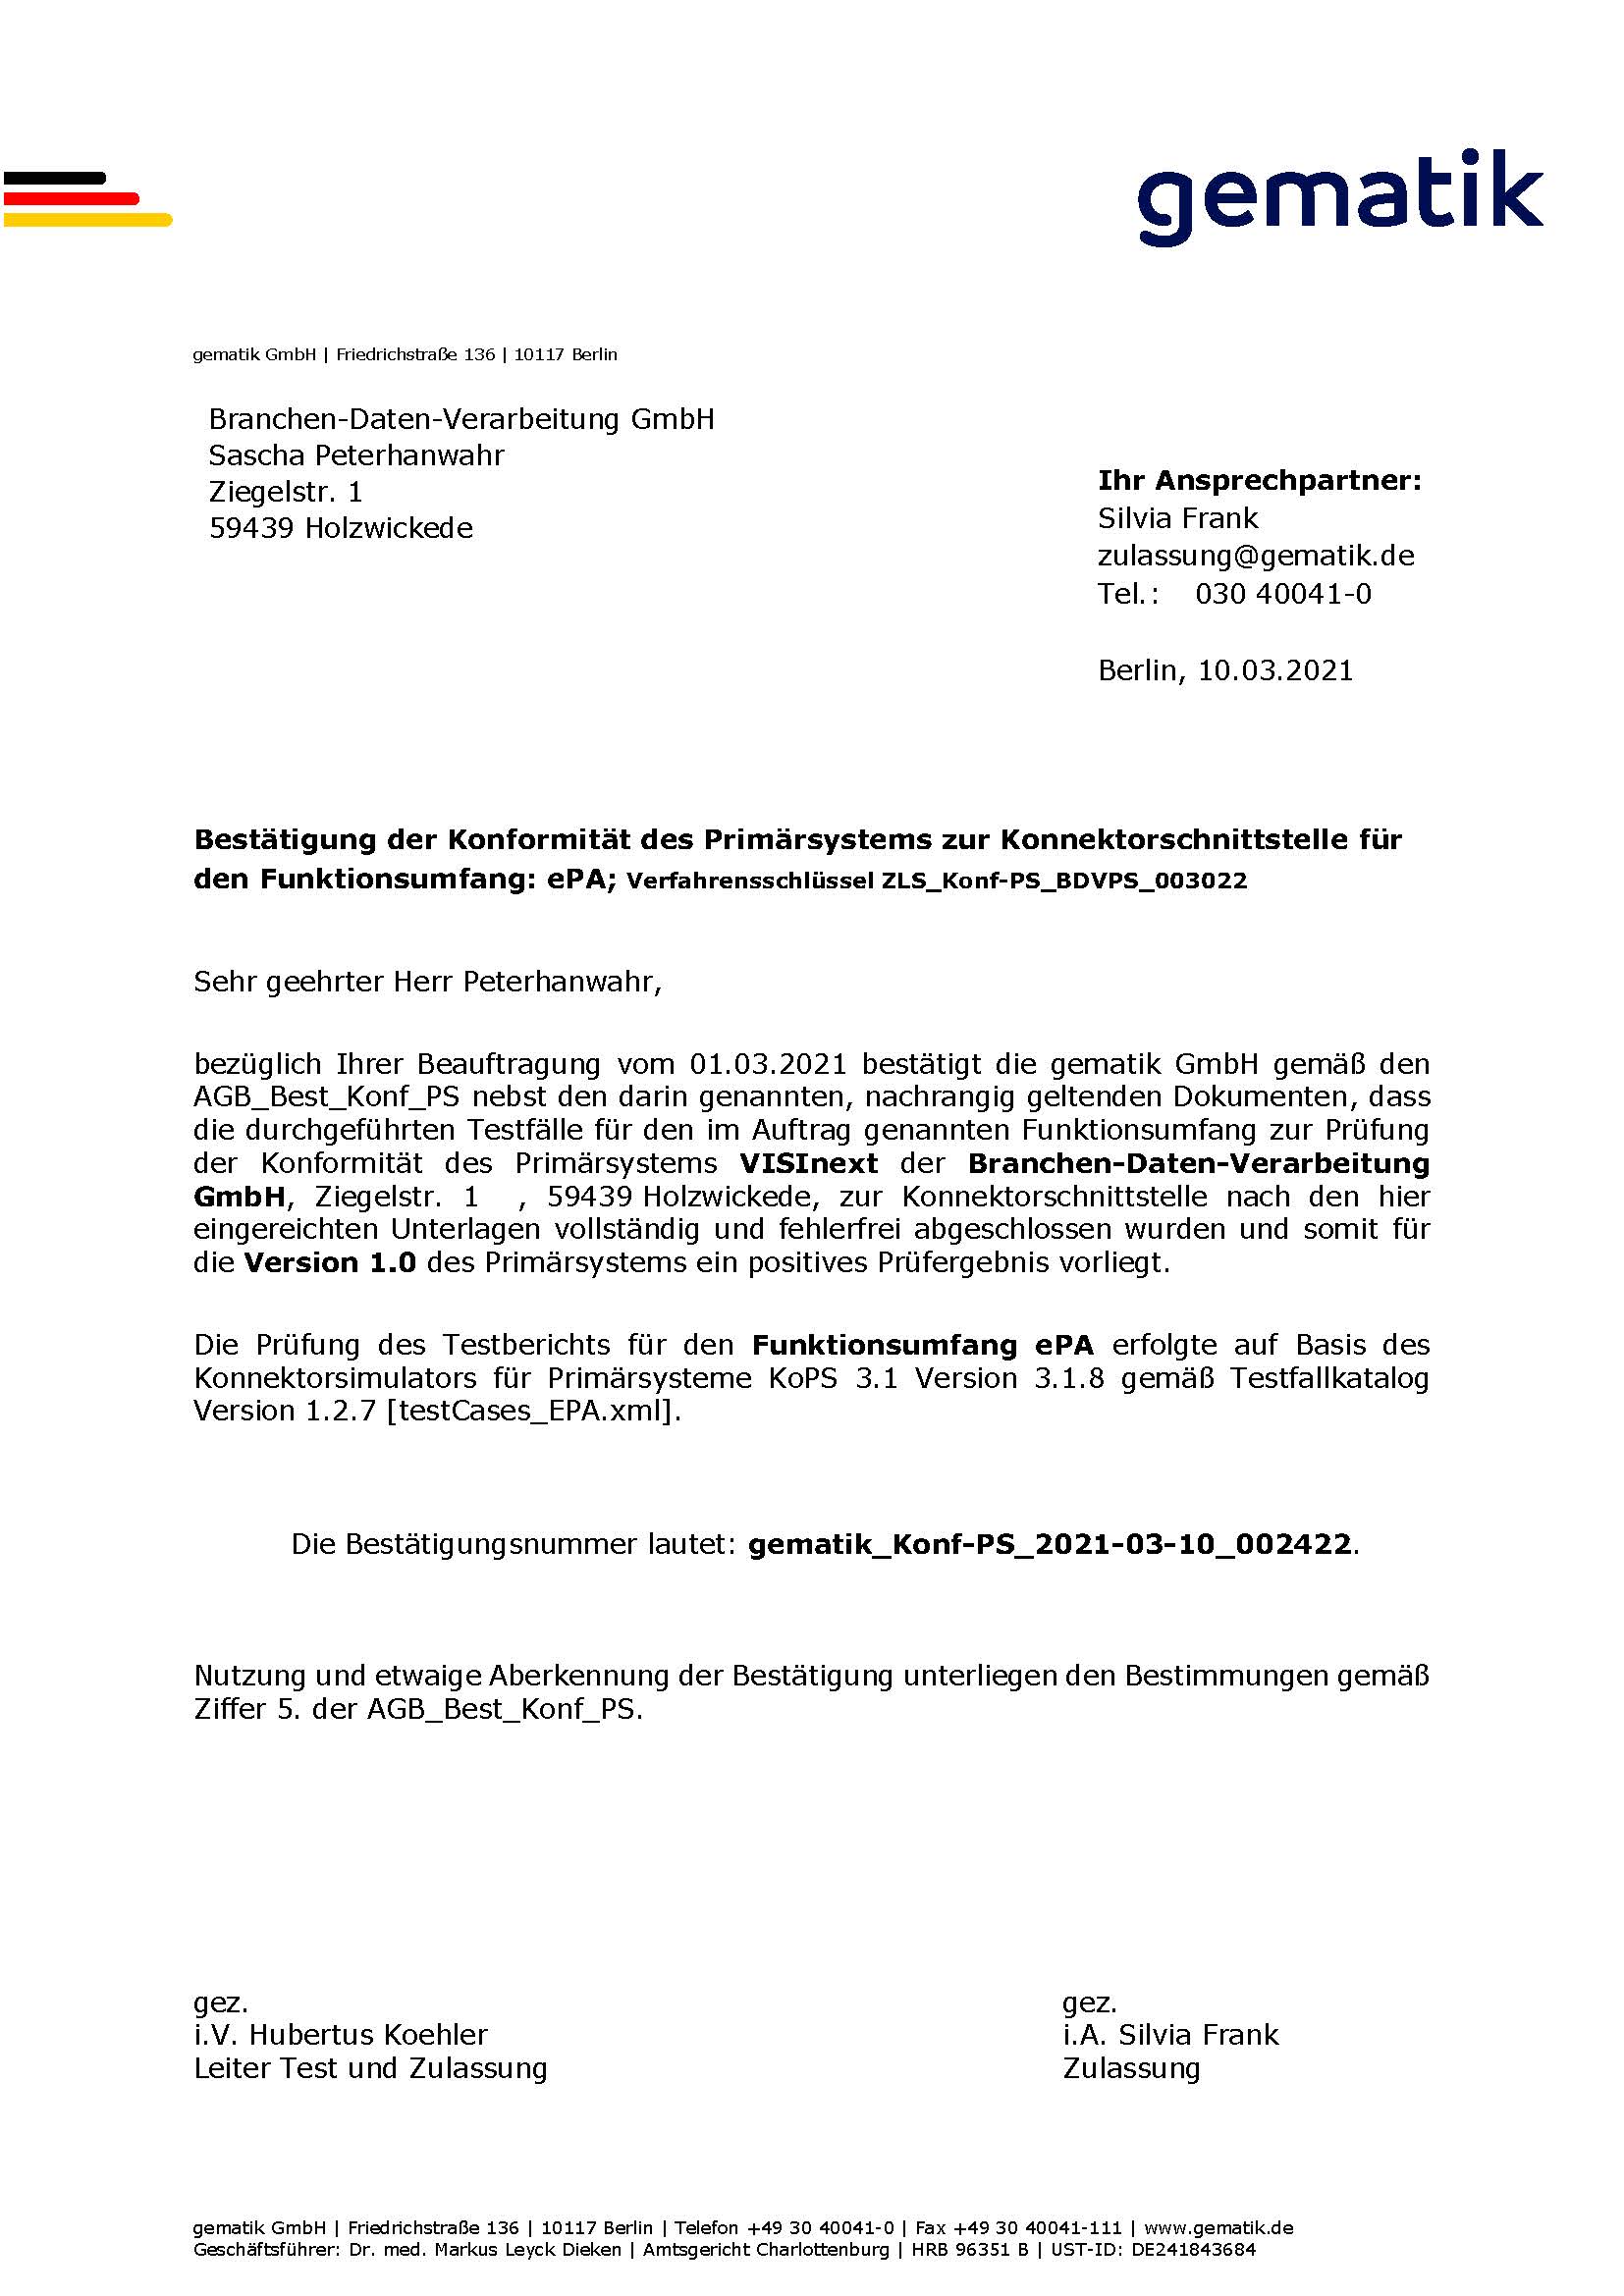 VISInext ePA-Modul der BDV GmbH - Telematikinfrastruktur - gematik Zulassung